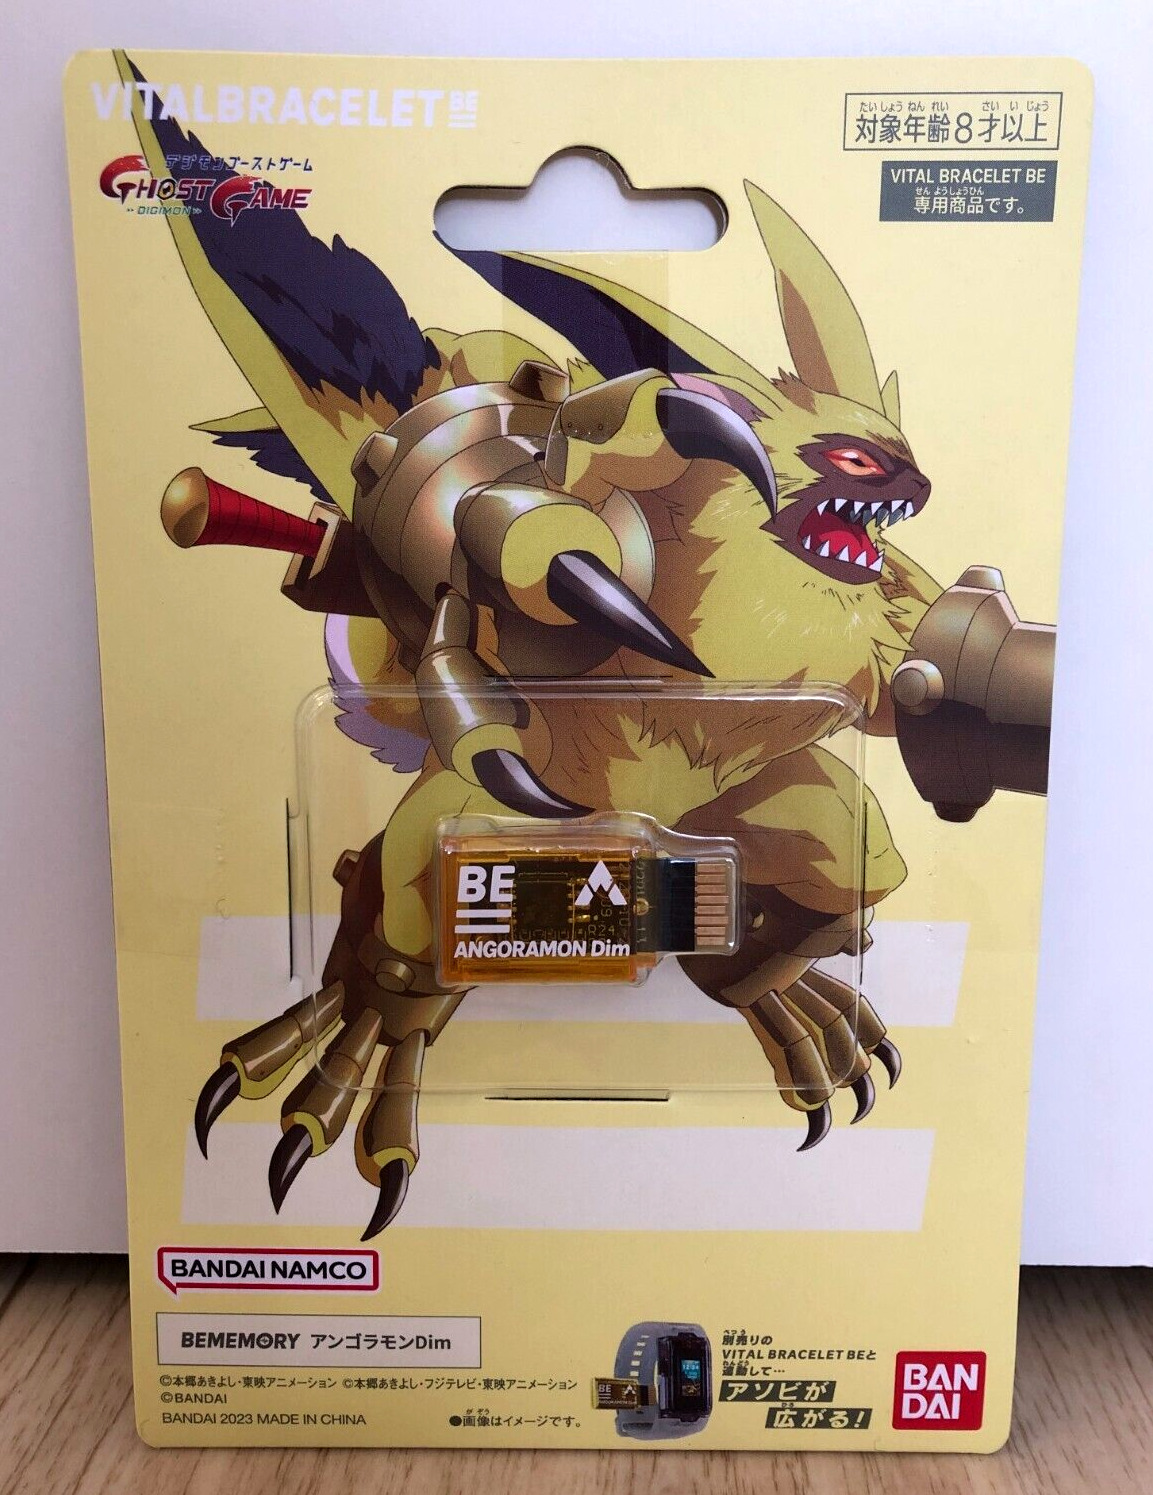 BANDAI BEMEMORY Digimon Ghost Game ANGORAMON Dim VITAL BRACELET BE Japan New